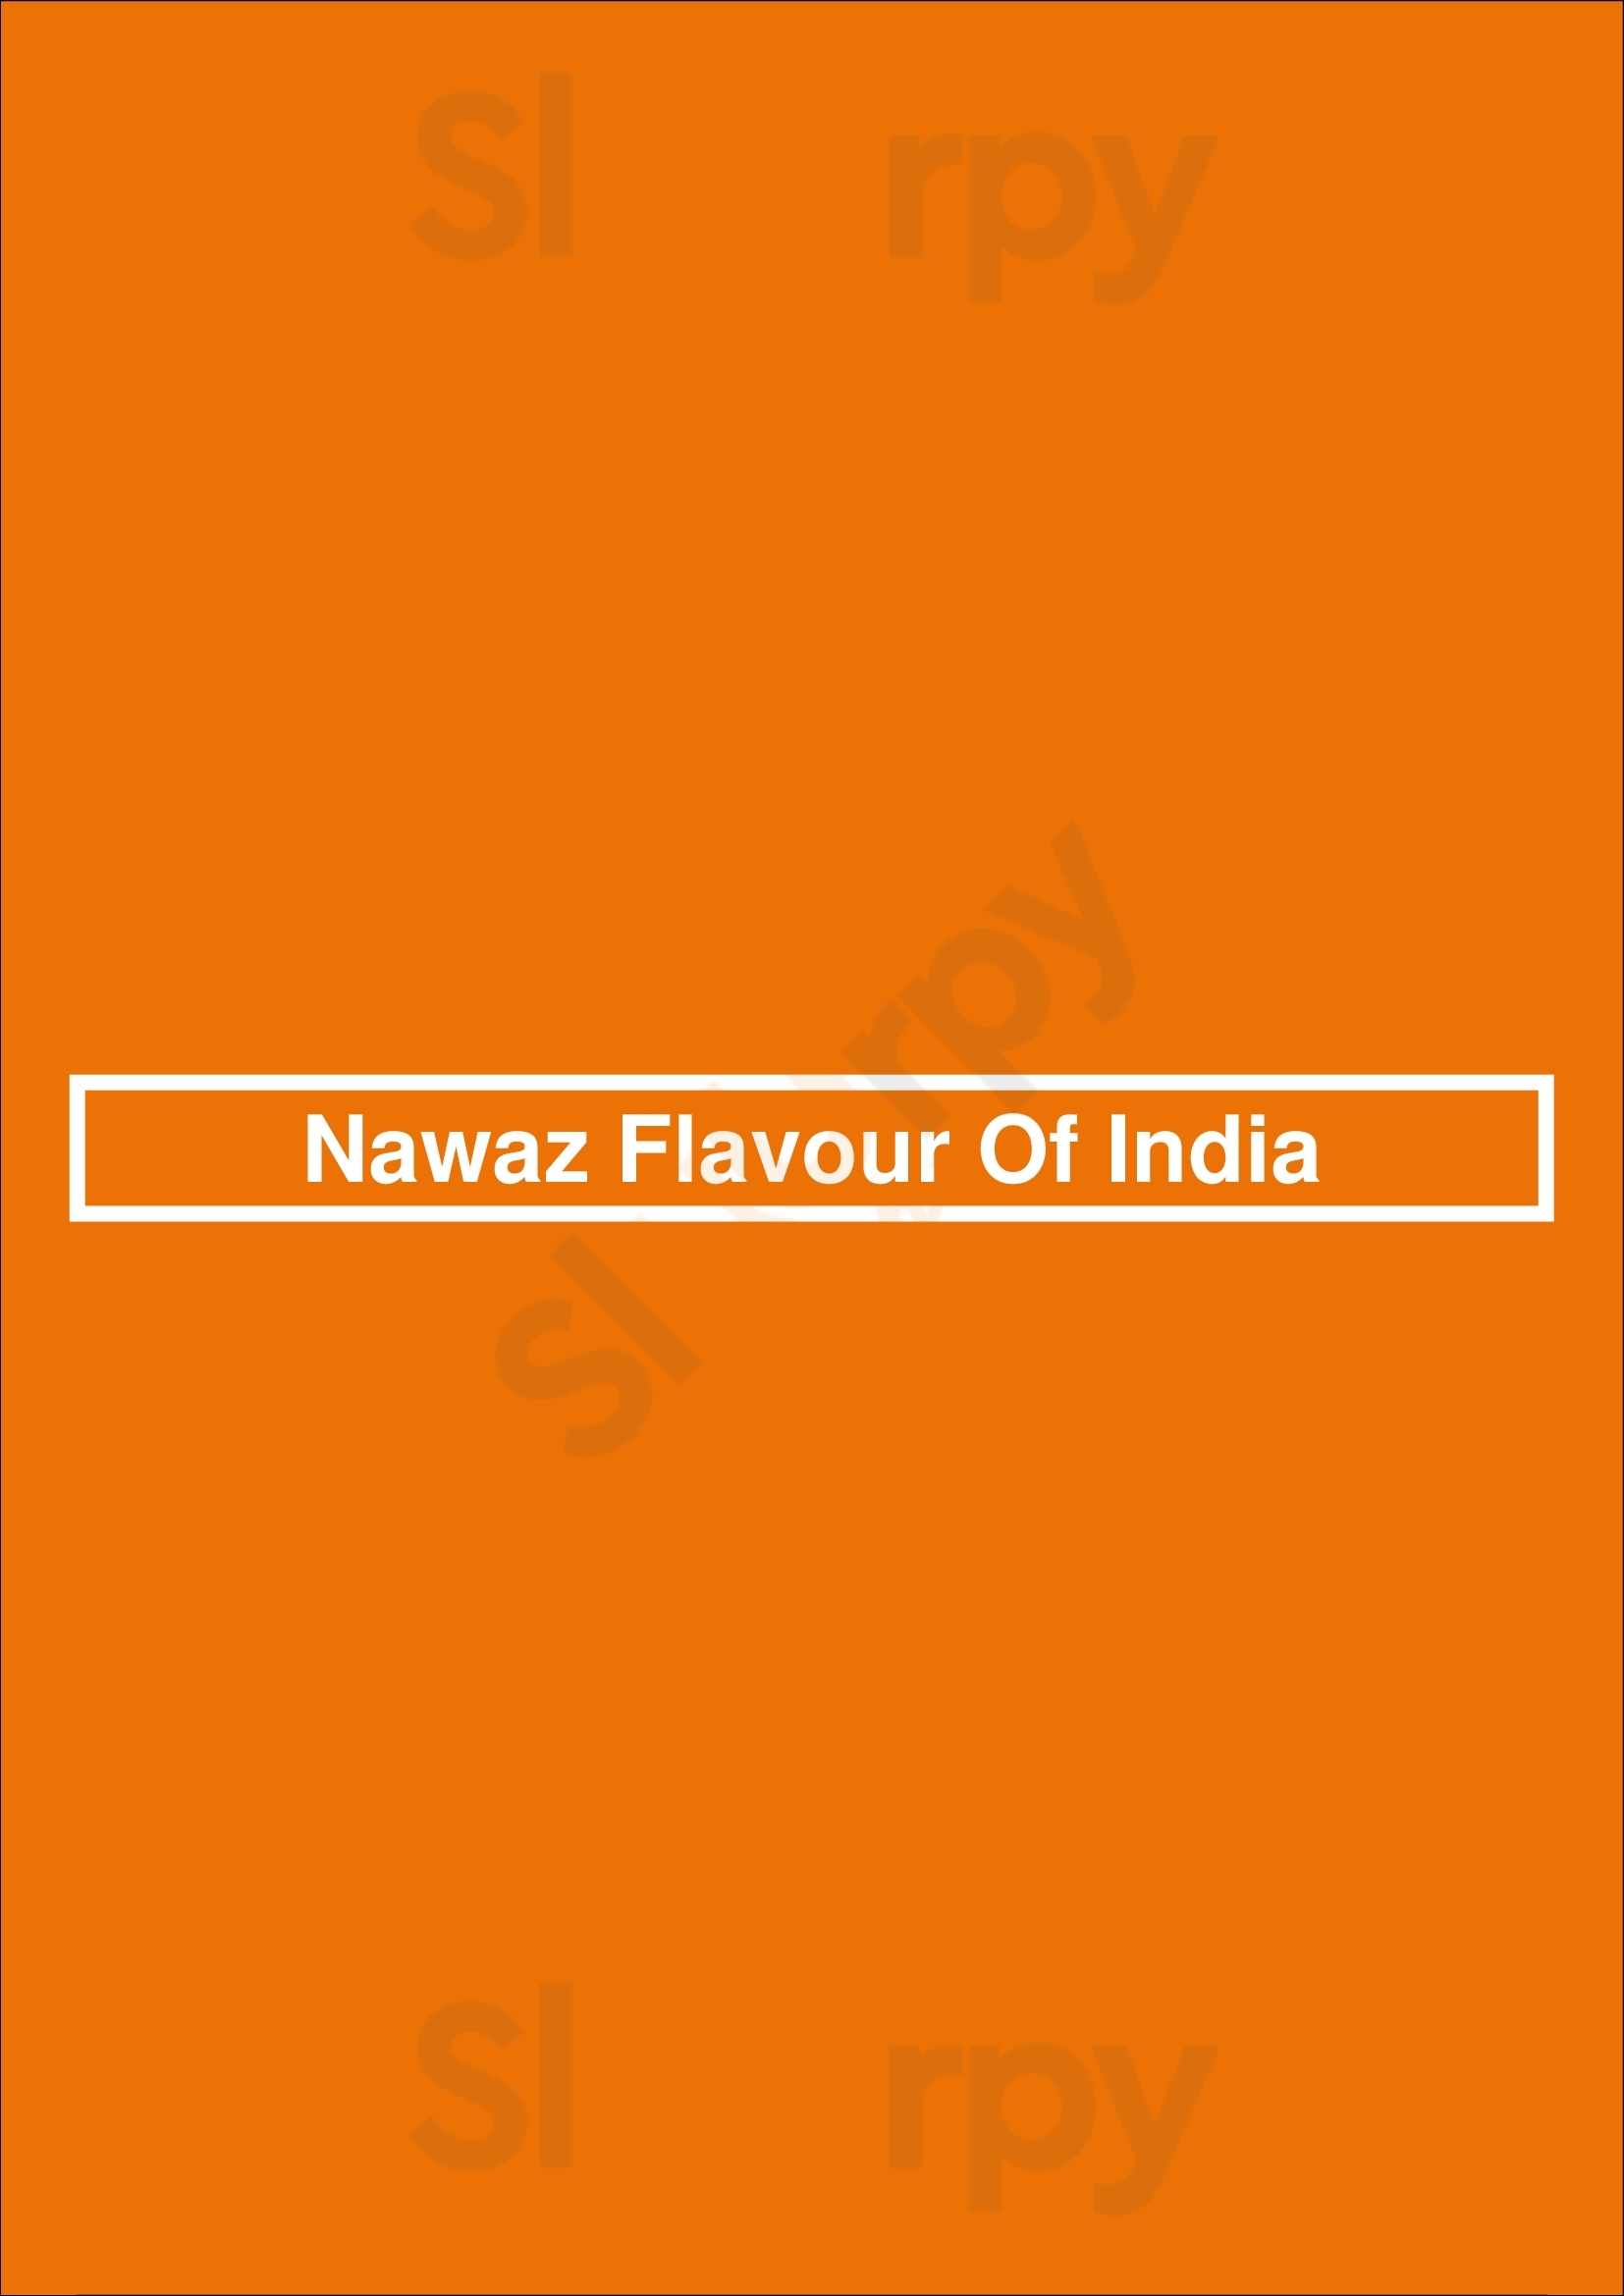 Nawaz Flavour Of India Sydney Menu - 1